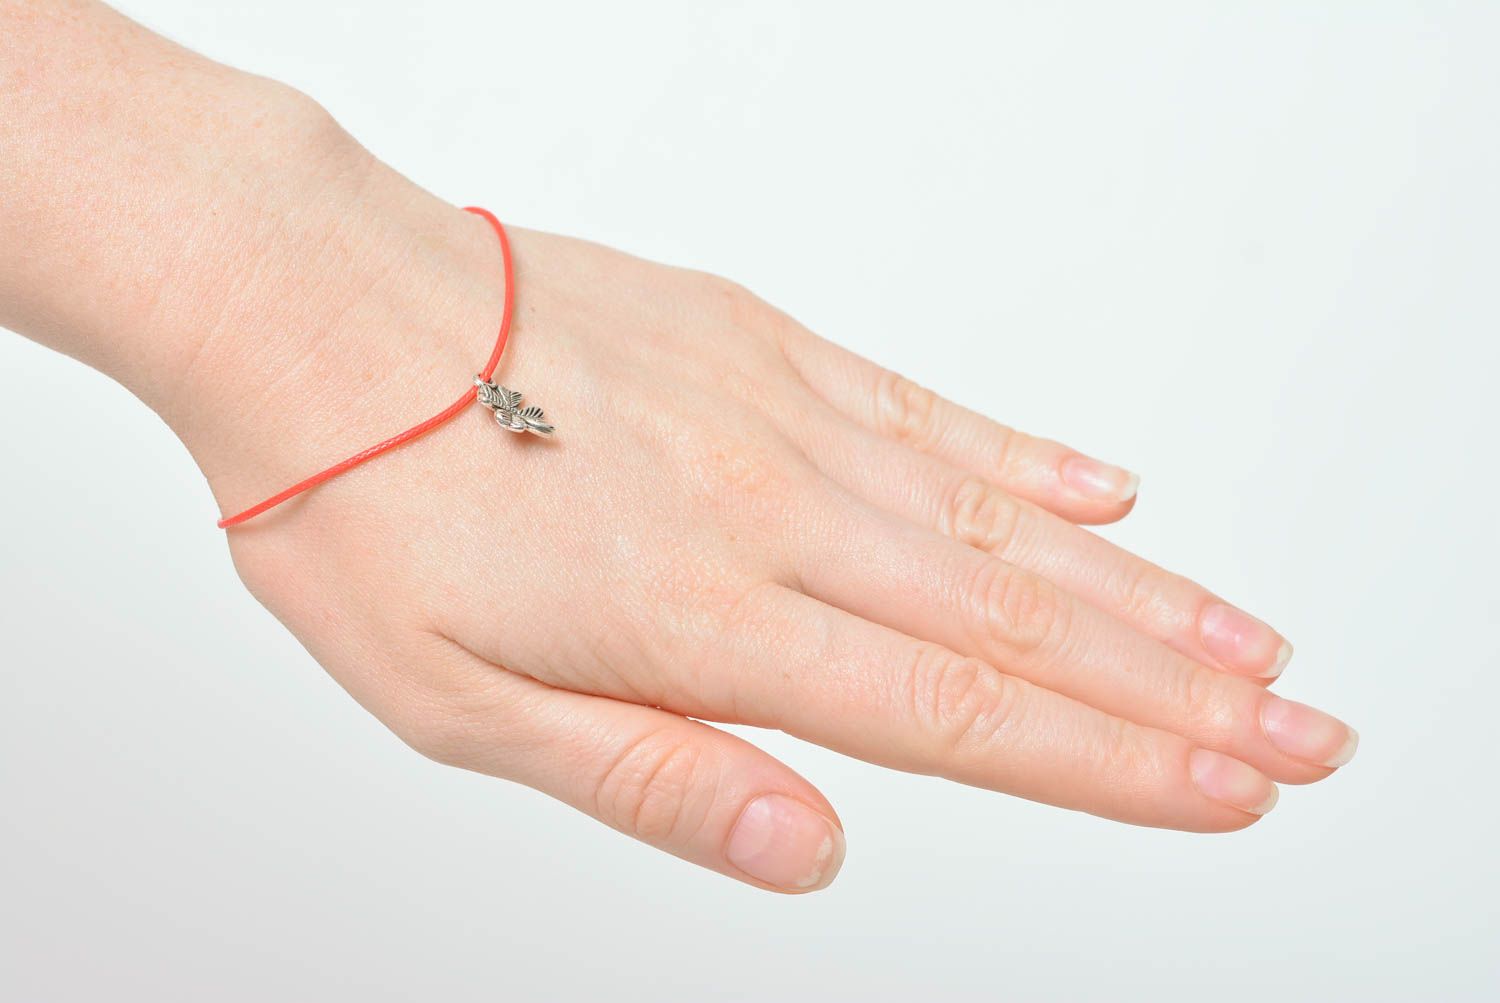 String bracelet homemade jewelry cord bracelet charm bracelet fashion jewelry photo 3